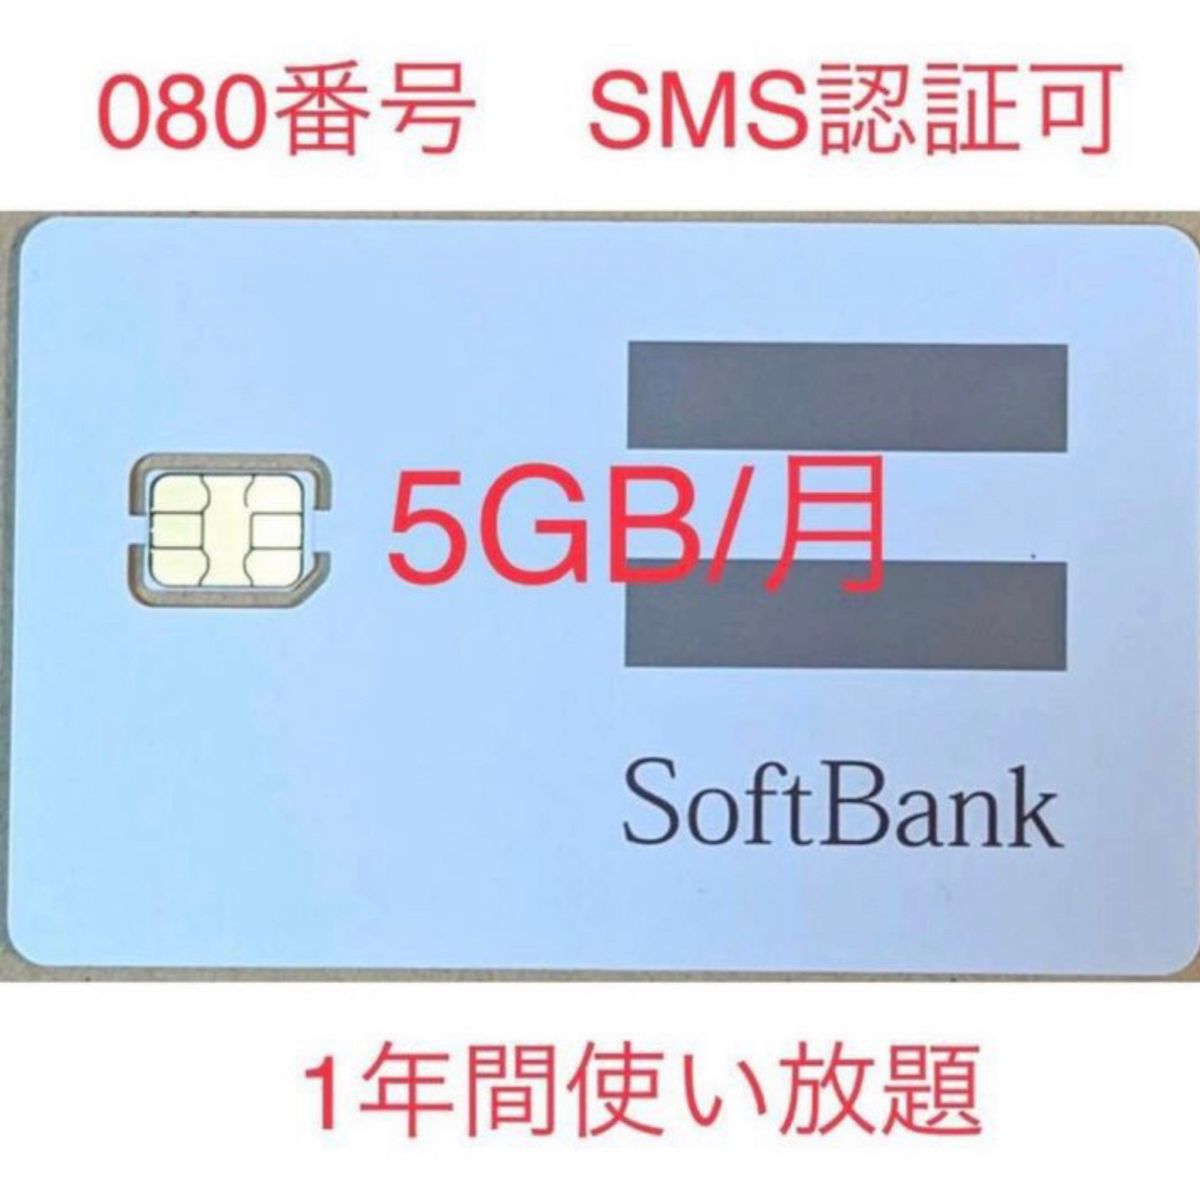 SoftBank プリペイドSIMカード 毎月5GB SMS受信可 データSIM SMS認証